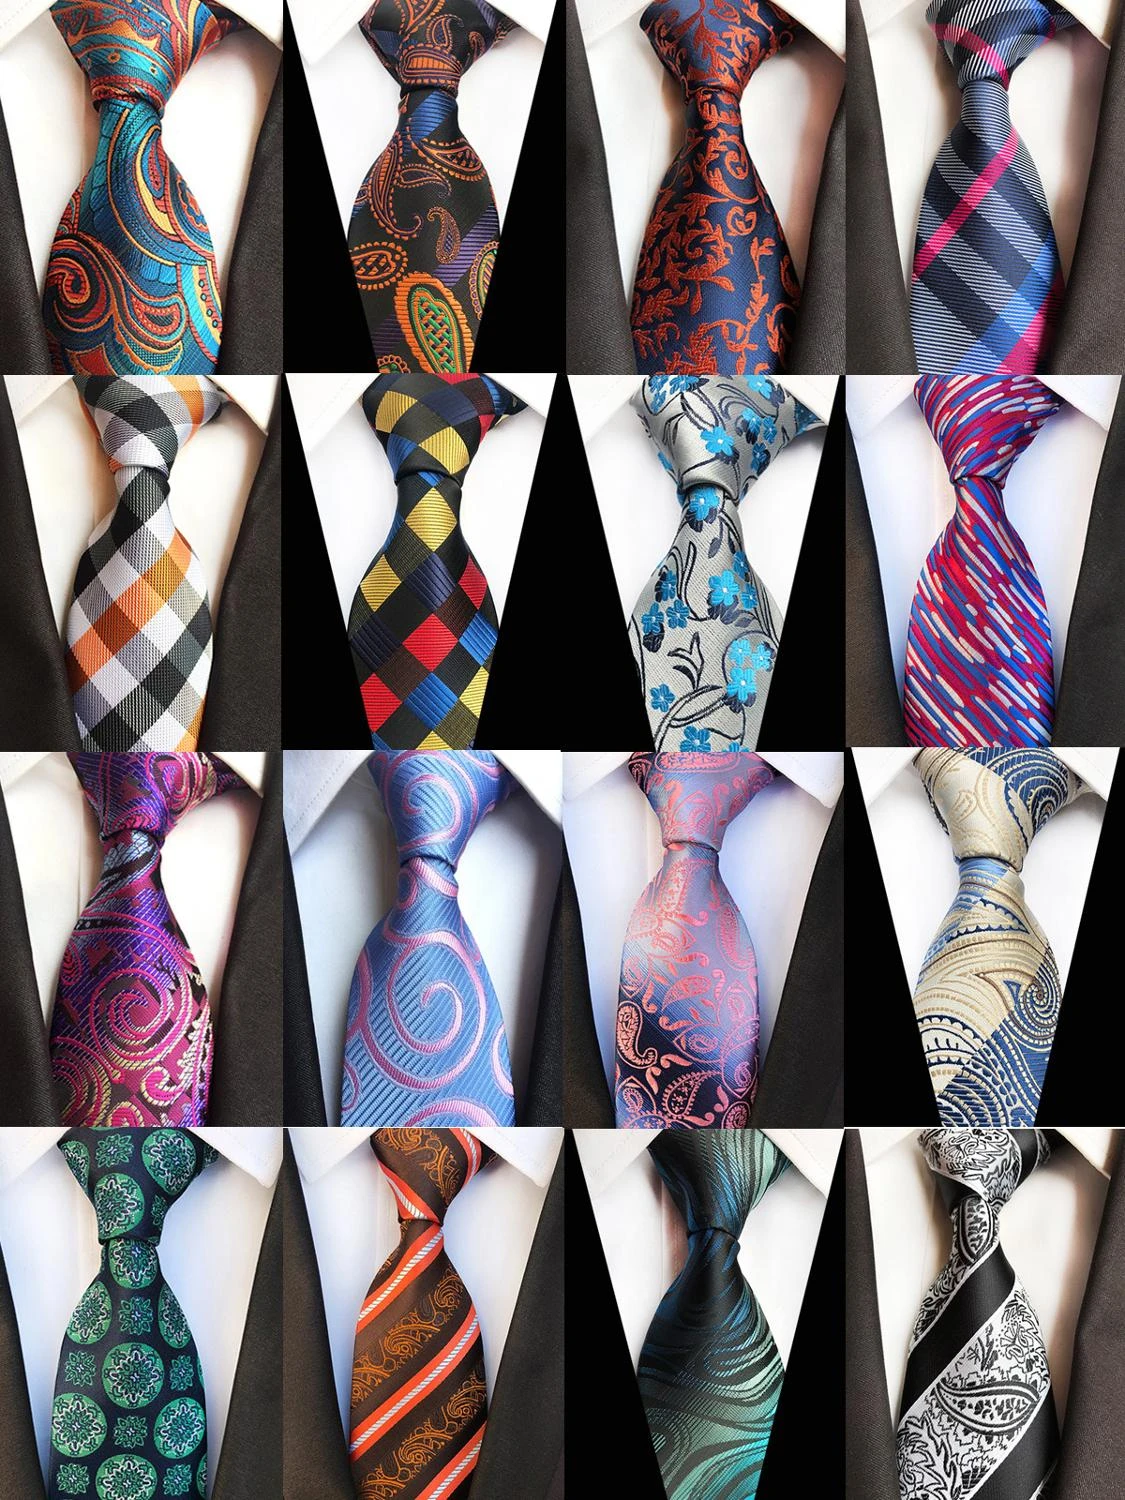 8 cm Hommes Jacquard tissé Tie Cravate Business Fête De Mariage Cravates 17 style